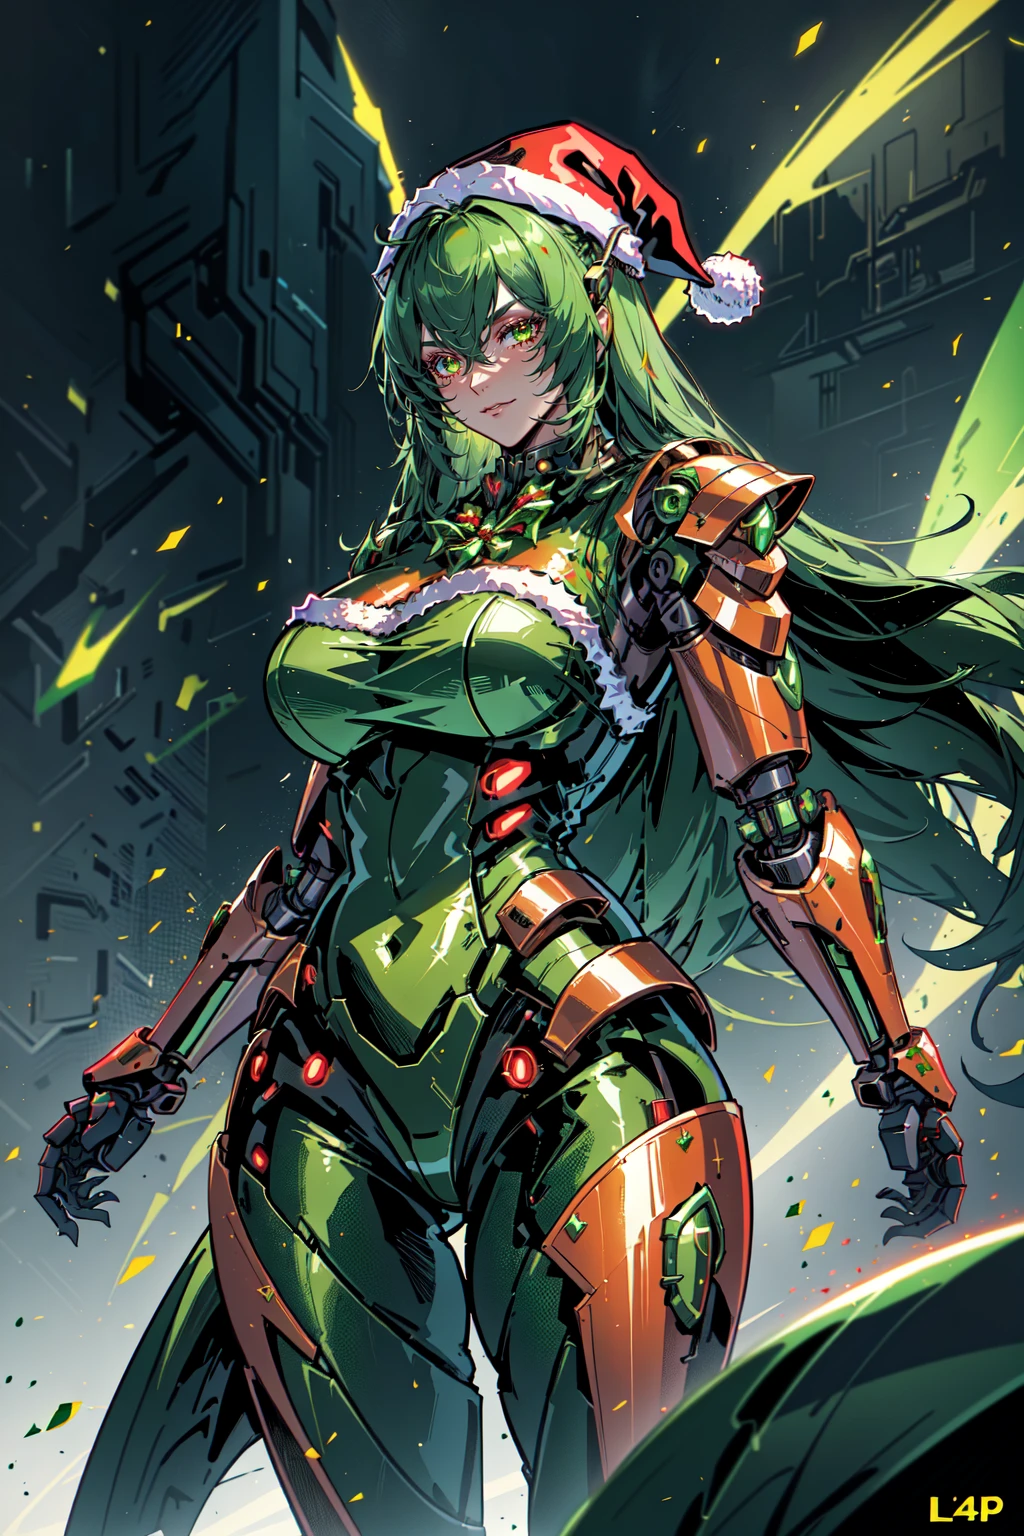 AiOverlordSanta, Un cyborg malvado disfrazado de Papá Noel vestido de verde y rojo., al estilo de irreal motor 5, arte detallado del cómic, 32k uhd, Acabados metálicos, ¡vaya!, 